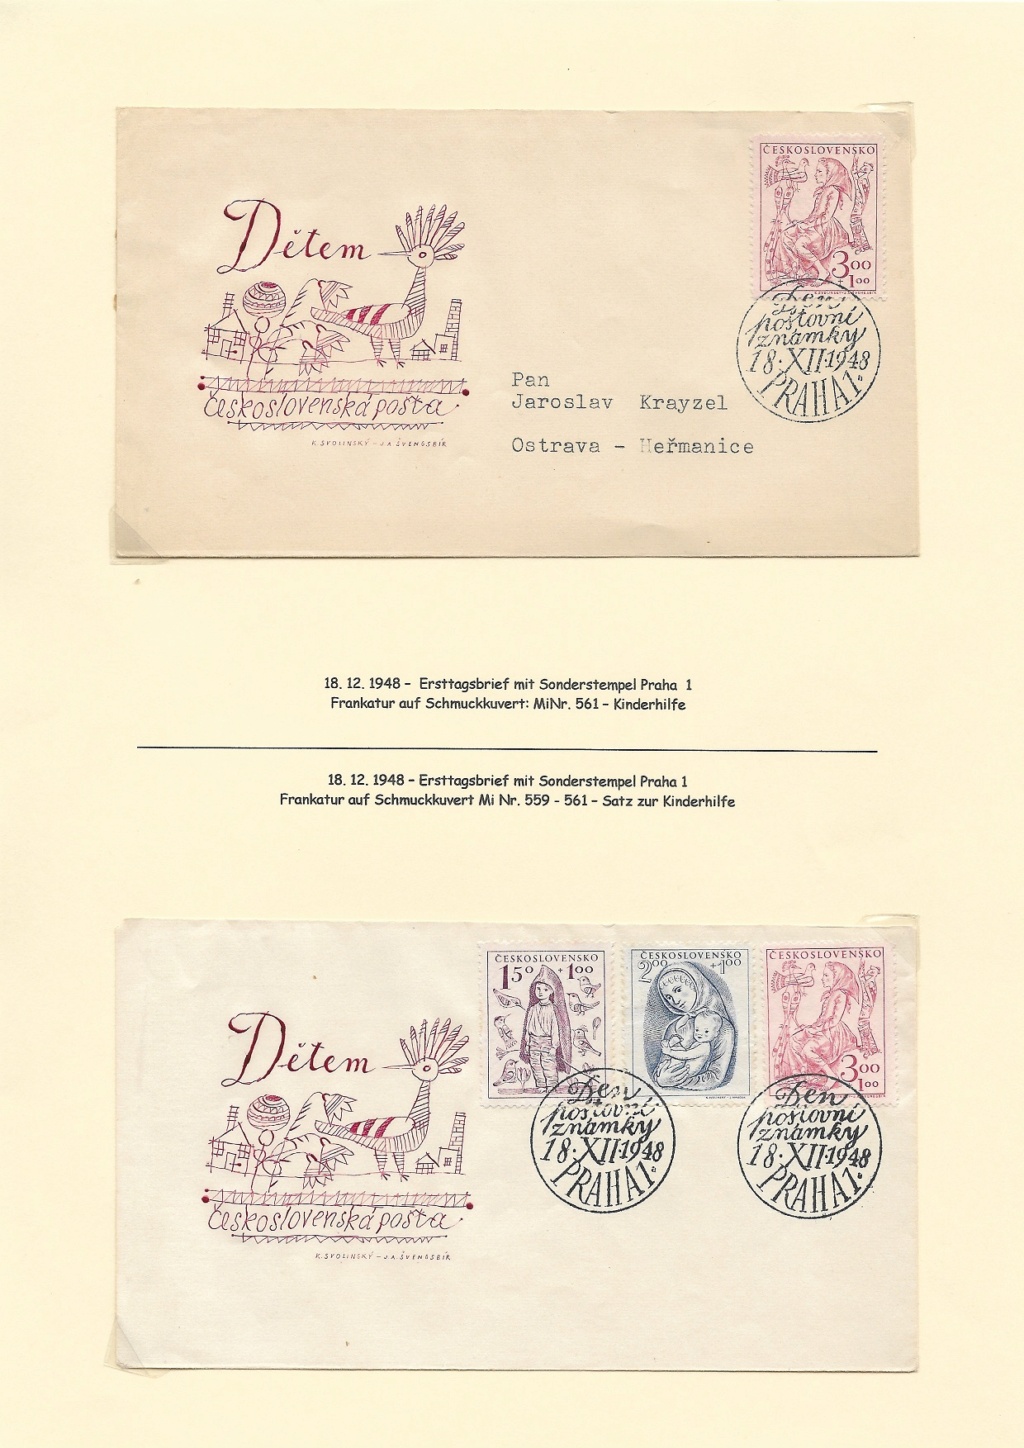 Tschechoslowakei - Briefmarkenausgaben 1948 2022-012